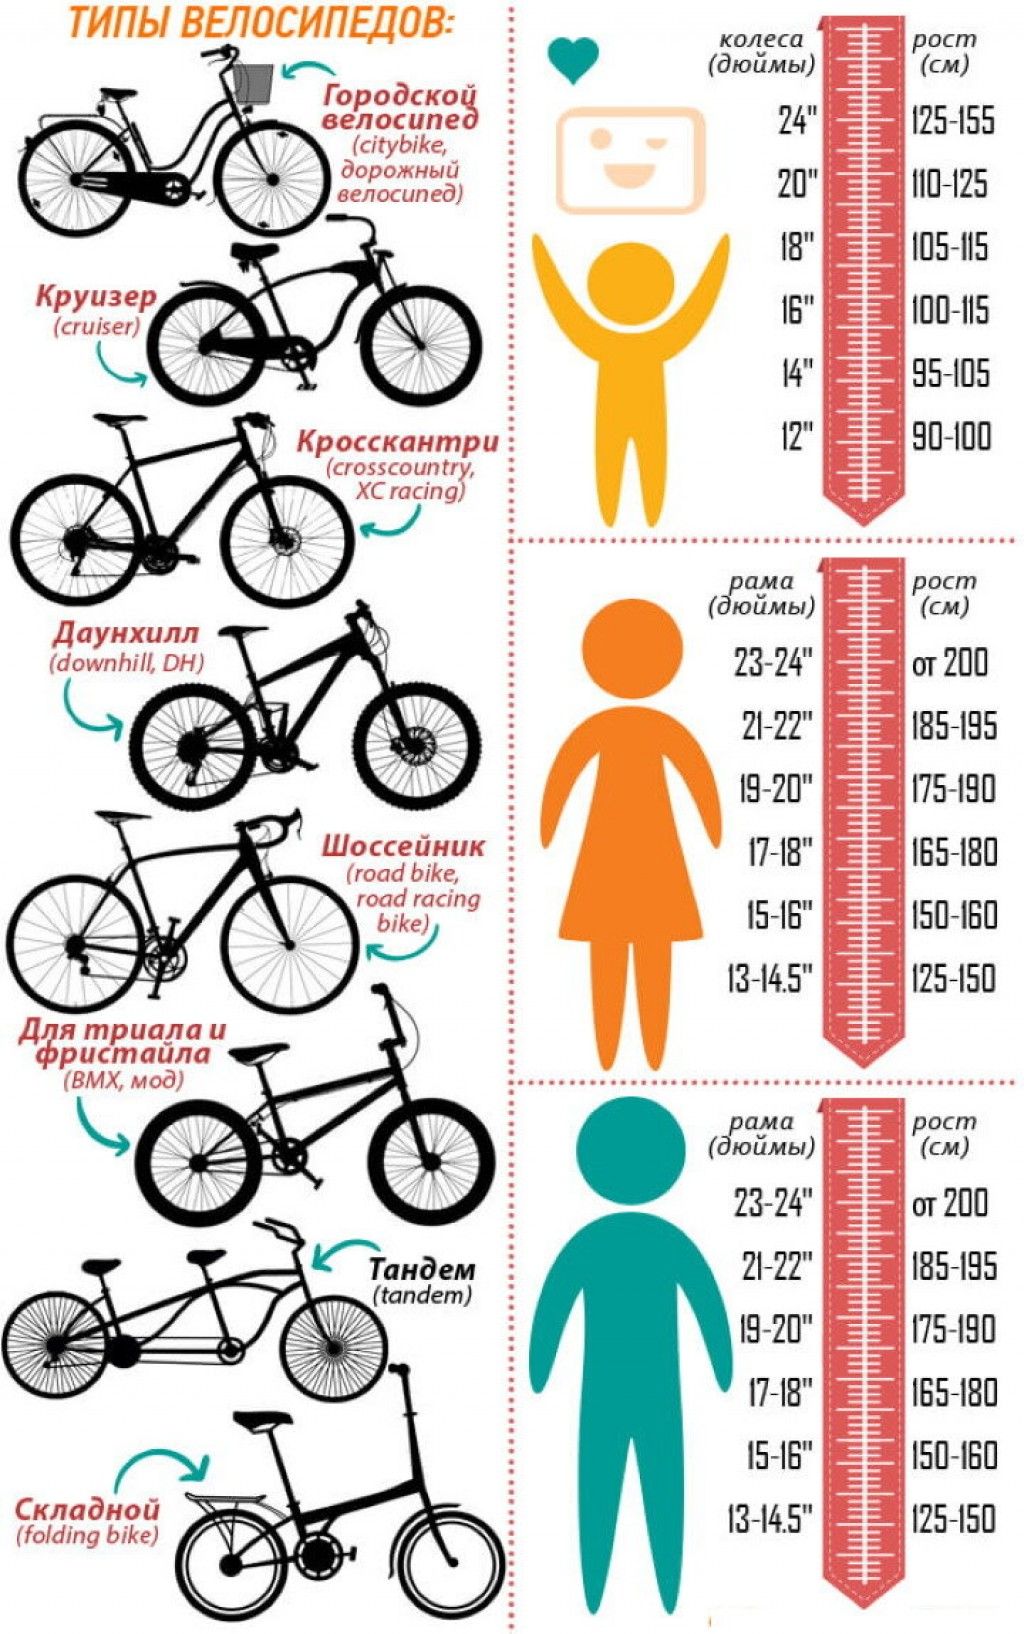 Рама 20 дюймов на какой рост. Как подобрать размер рамы велосипеда по росту ребенка. Как выбрать размер рамы велосипеда по росту ребенка. Размер рамы и колес велосипеда по росту таблица для детей. Размер рамы у велосипеда с 26 колесами.